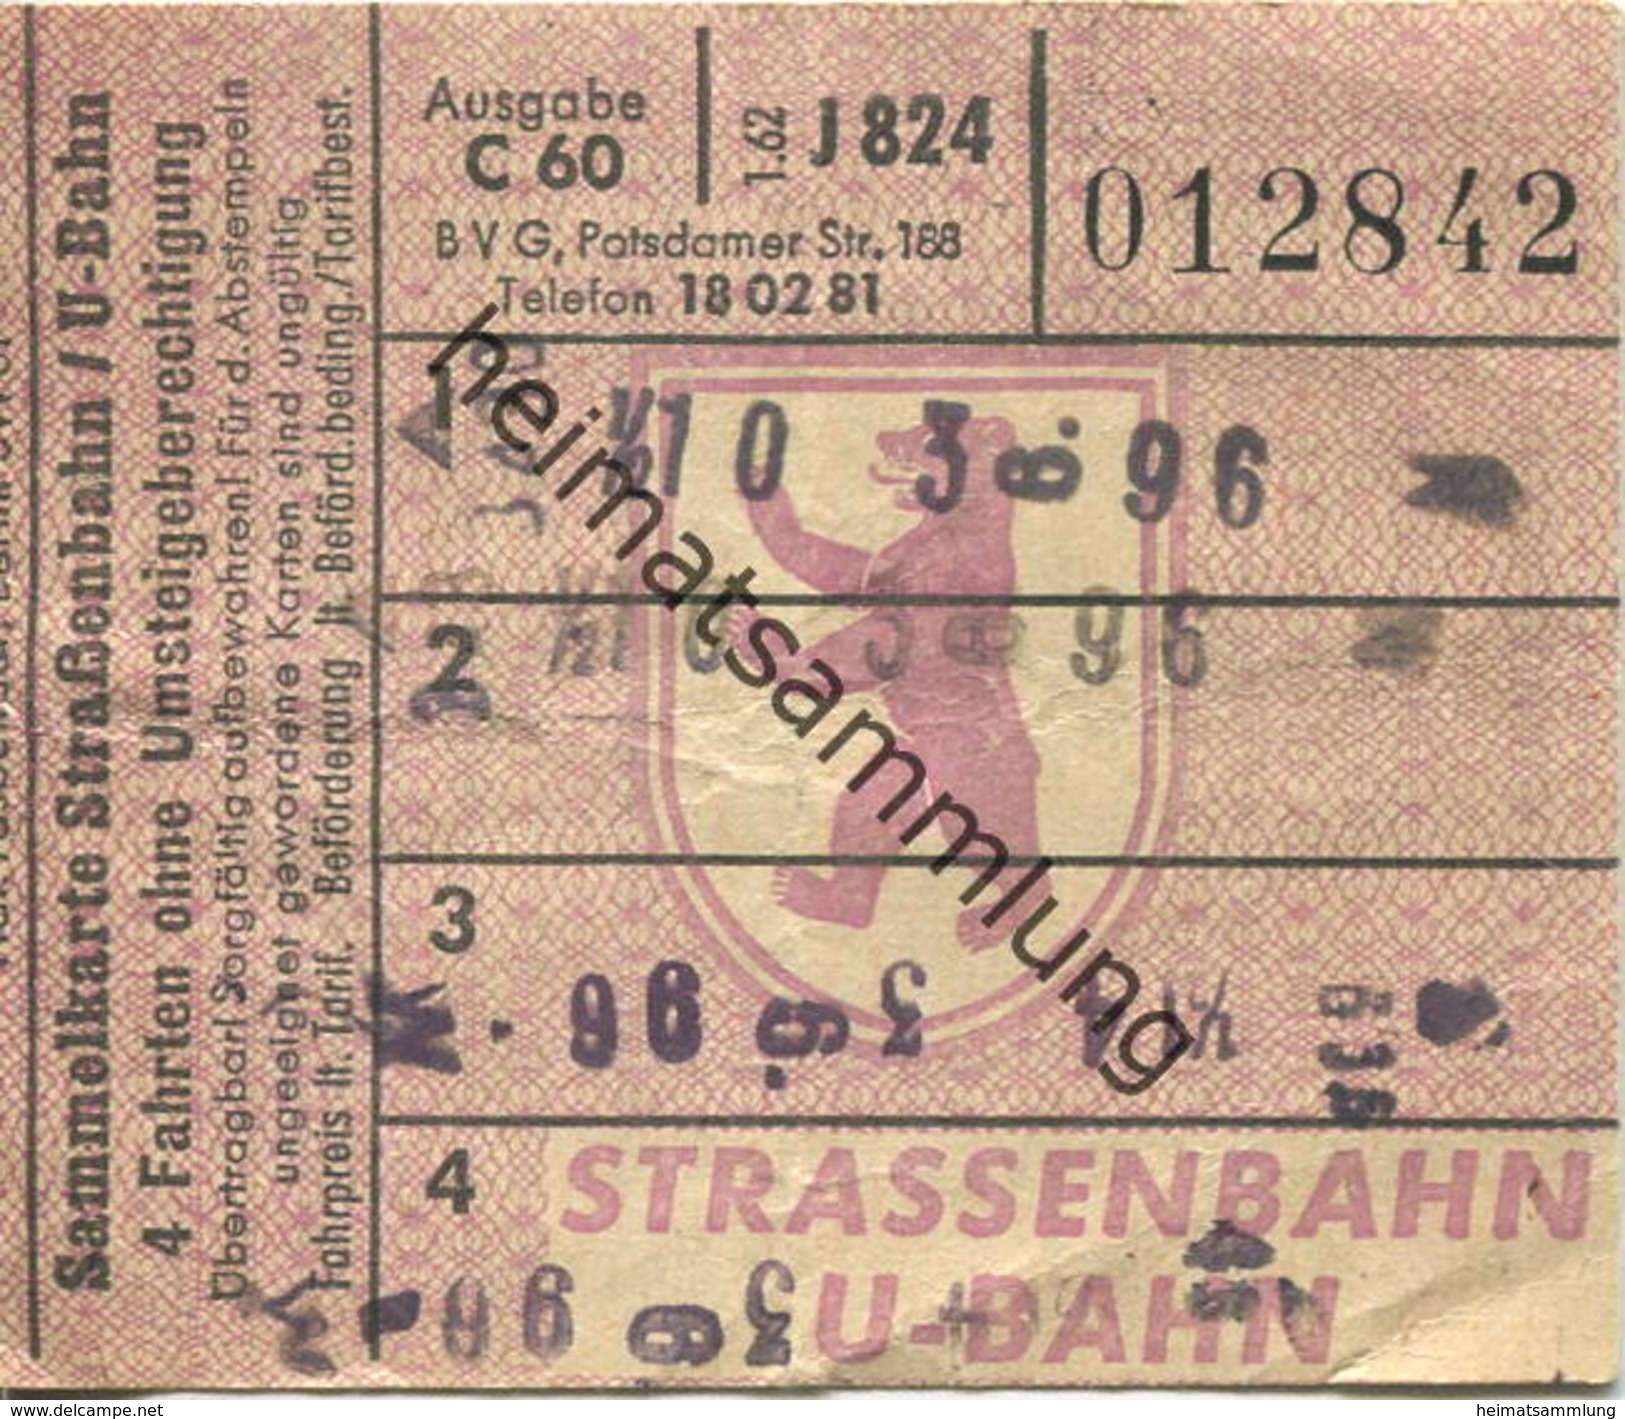 Deutschland - Berlin - BVG - Sammelkarte - Strassenbahn / U-Bahn 4 Fahrten Ohne Umsteigeberechtigung 1962 - Europa